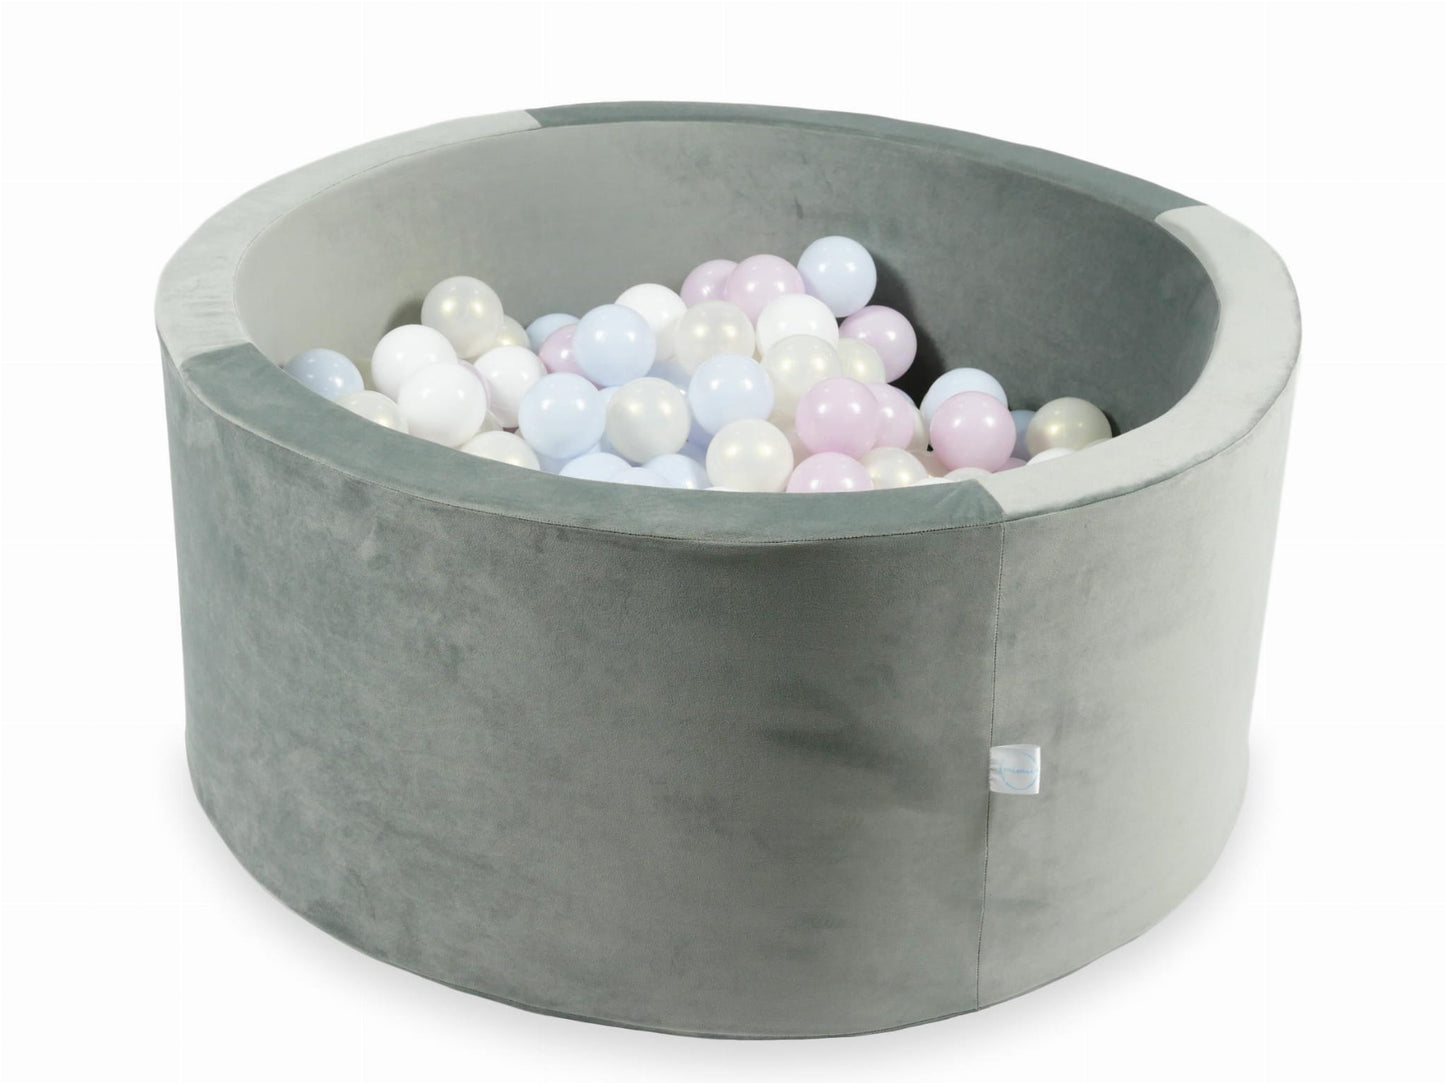 Piscine à Balles 90x40 Velvet gris avec balles 300 pcs (rose perle claire, bleu perle claire, iridescent, blanc)